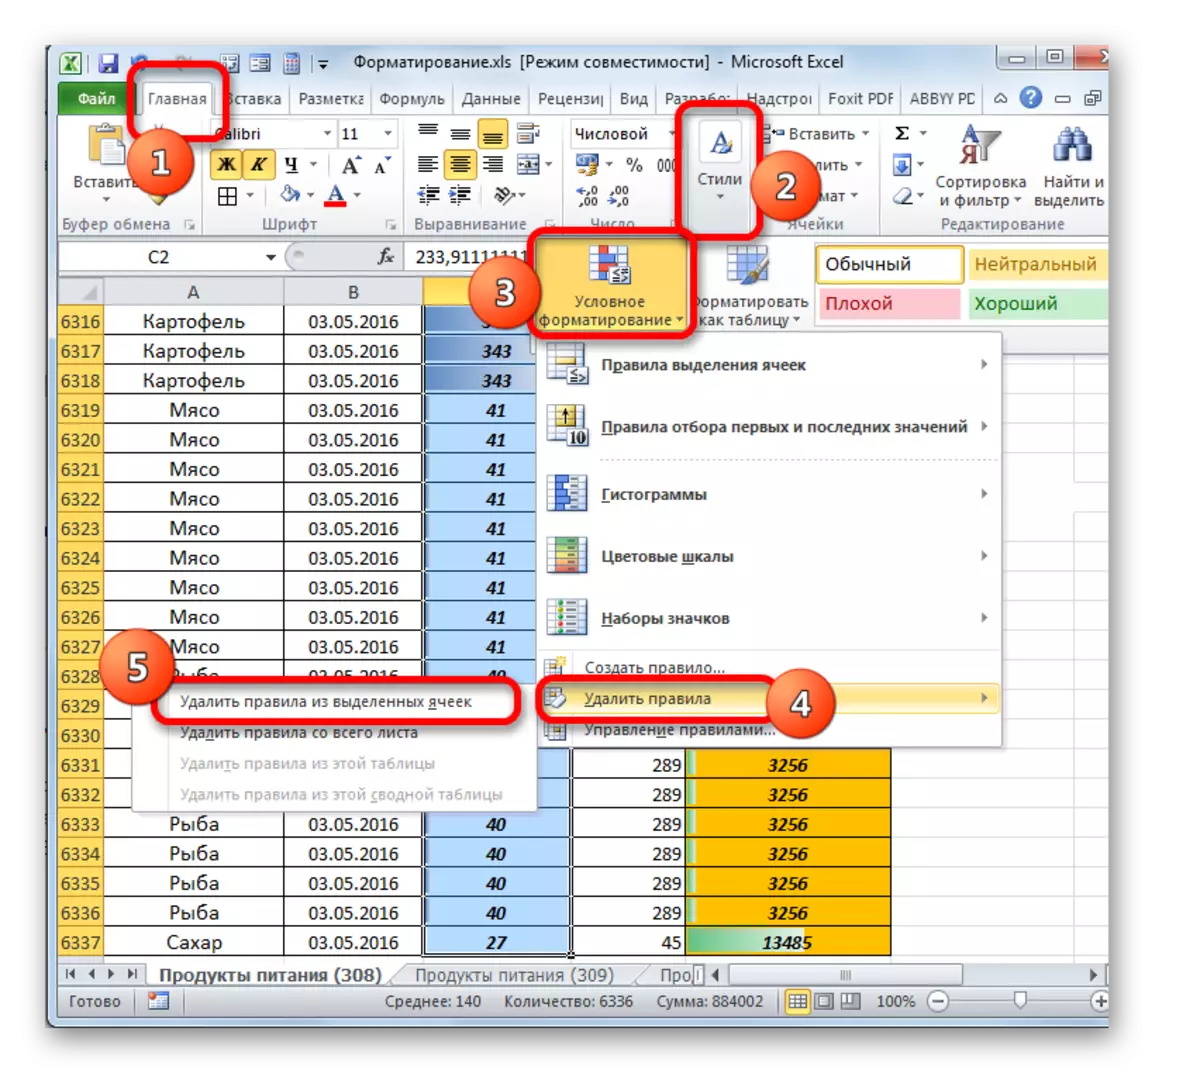 הסרת כללי עיצוב מותנים בתאים נבחרים ב- Microsoft Excel